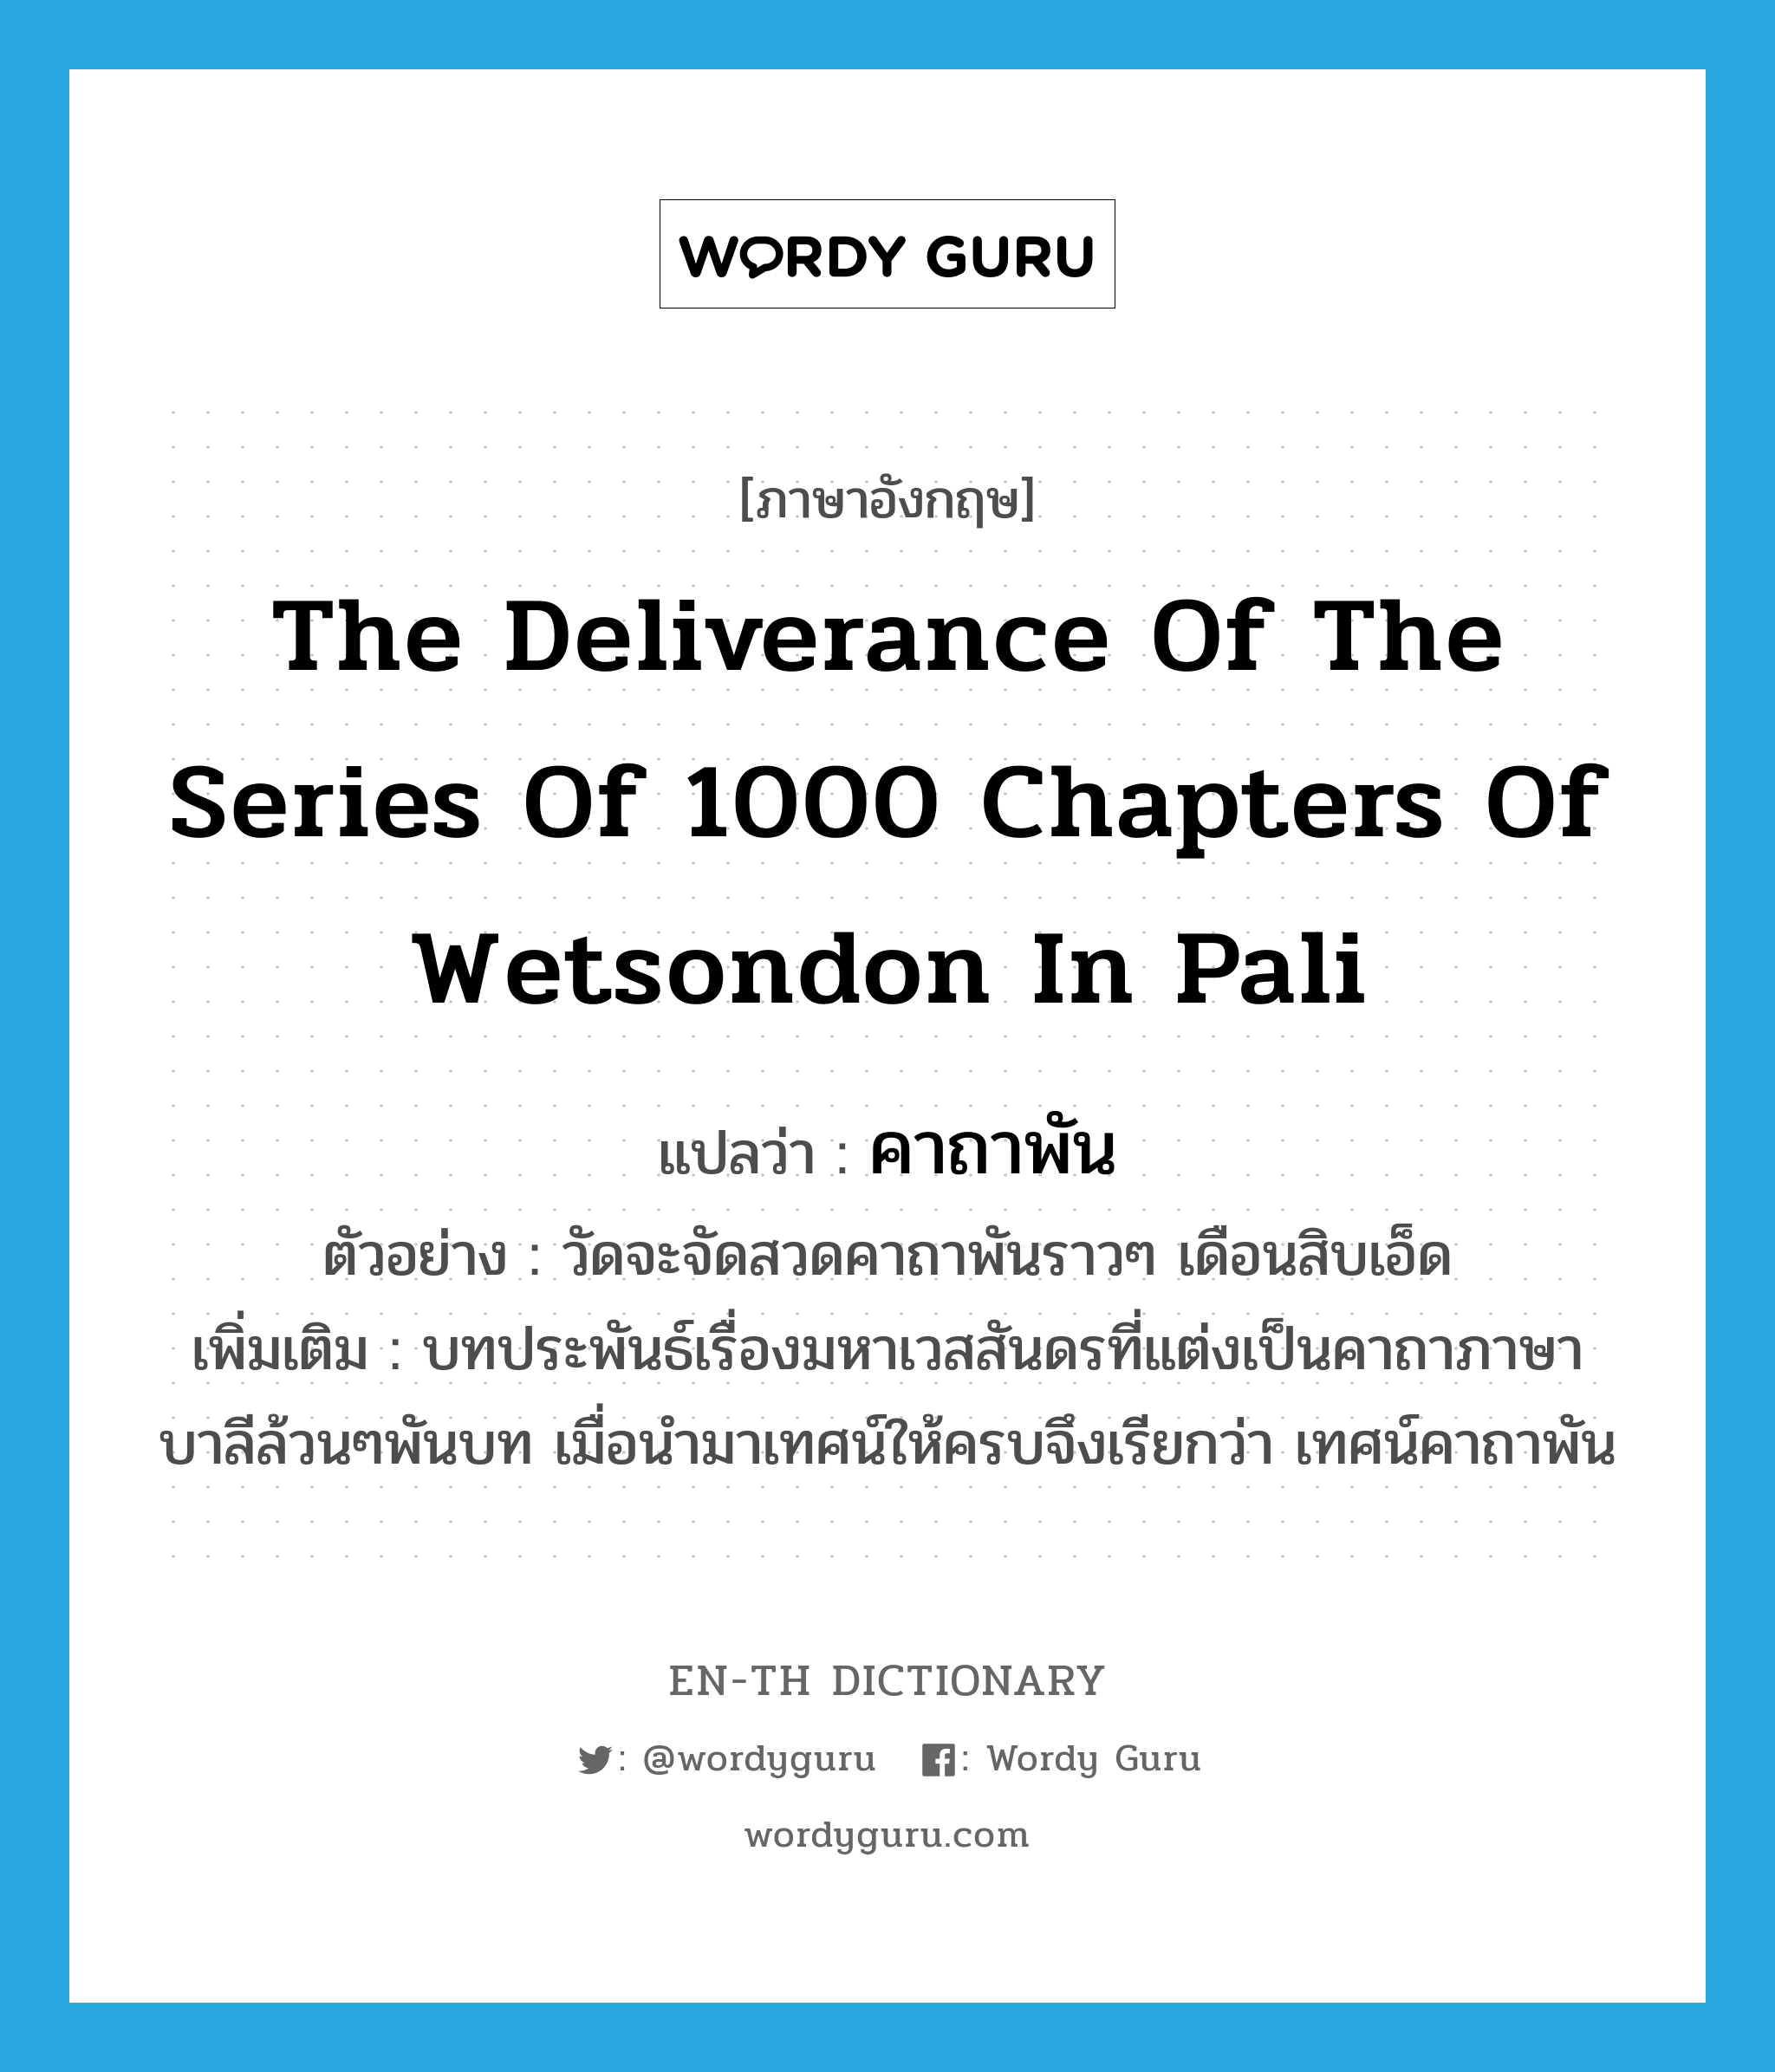 คาถาพัน ภาษาอังกฤษ?, คำศัพท์ภาษาอังกฤษ คาถาพัน แปลว่า the deliverance of the series of 1000 chapters of Wetsondon in Pali ประเภท N ตัวอย่าง วัดจะจัดสวดคาถาพันราวๆ เดือนสิบเอ็ด เพิ่มเติม บทประพันธ์เรื่องมหาเวสสันดรที่แต่งเป็นคาถาภาษาบาลีล้วนๆพันบท เมื่อนำมาเทศน์ให้ครบจึงเรียกว่า เทศน์คาถาพัน หมวด N